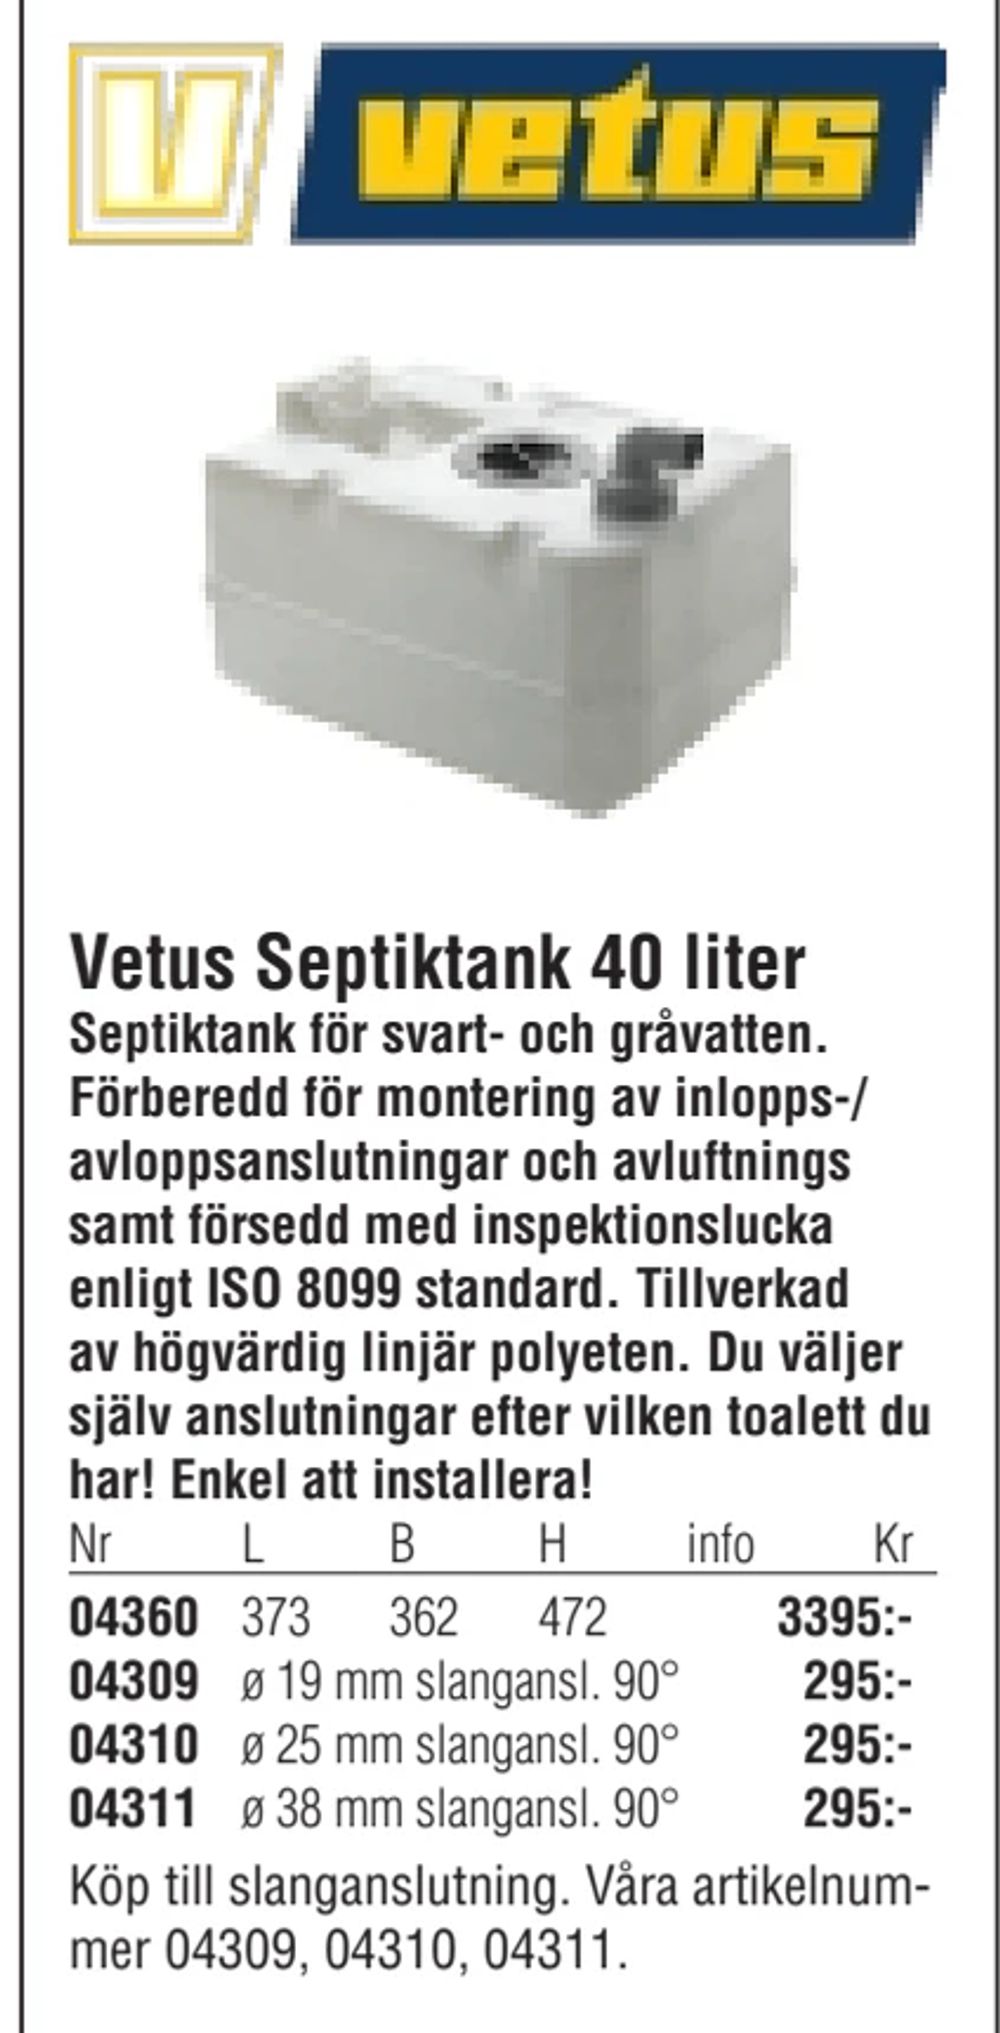 Erbjudanden på Vetus Septiktank 40 liter från Erlandsons Brygga för 3 395 kr